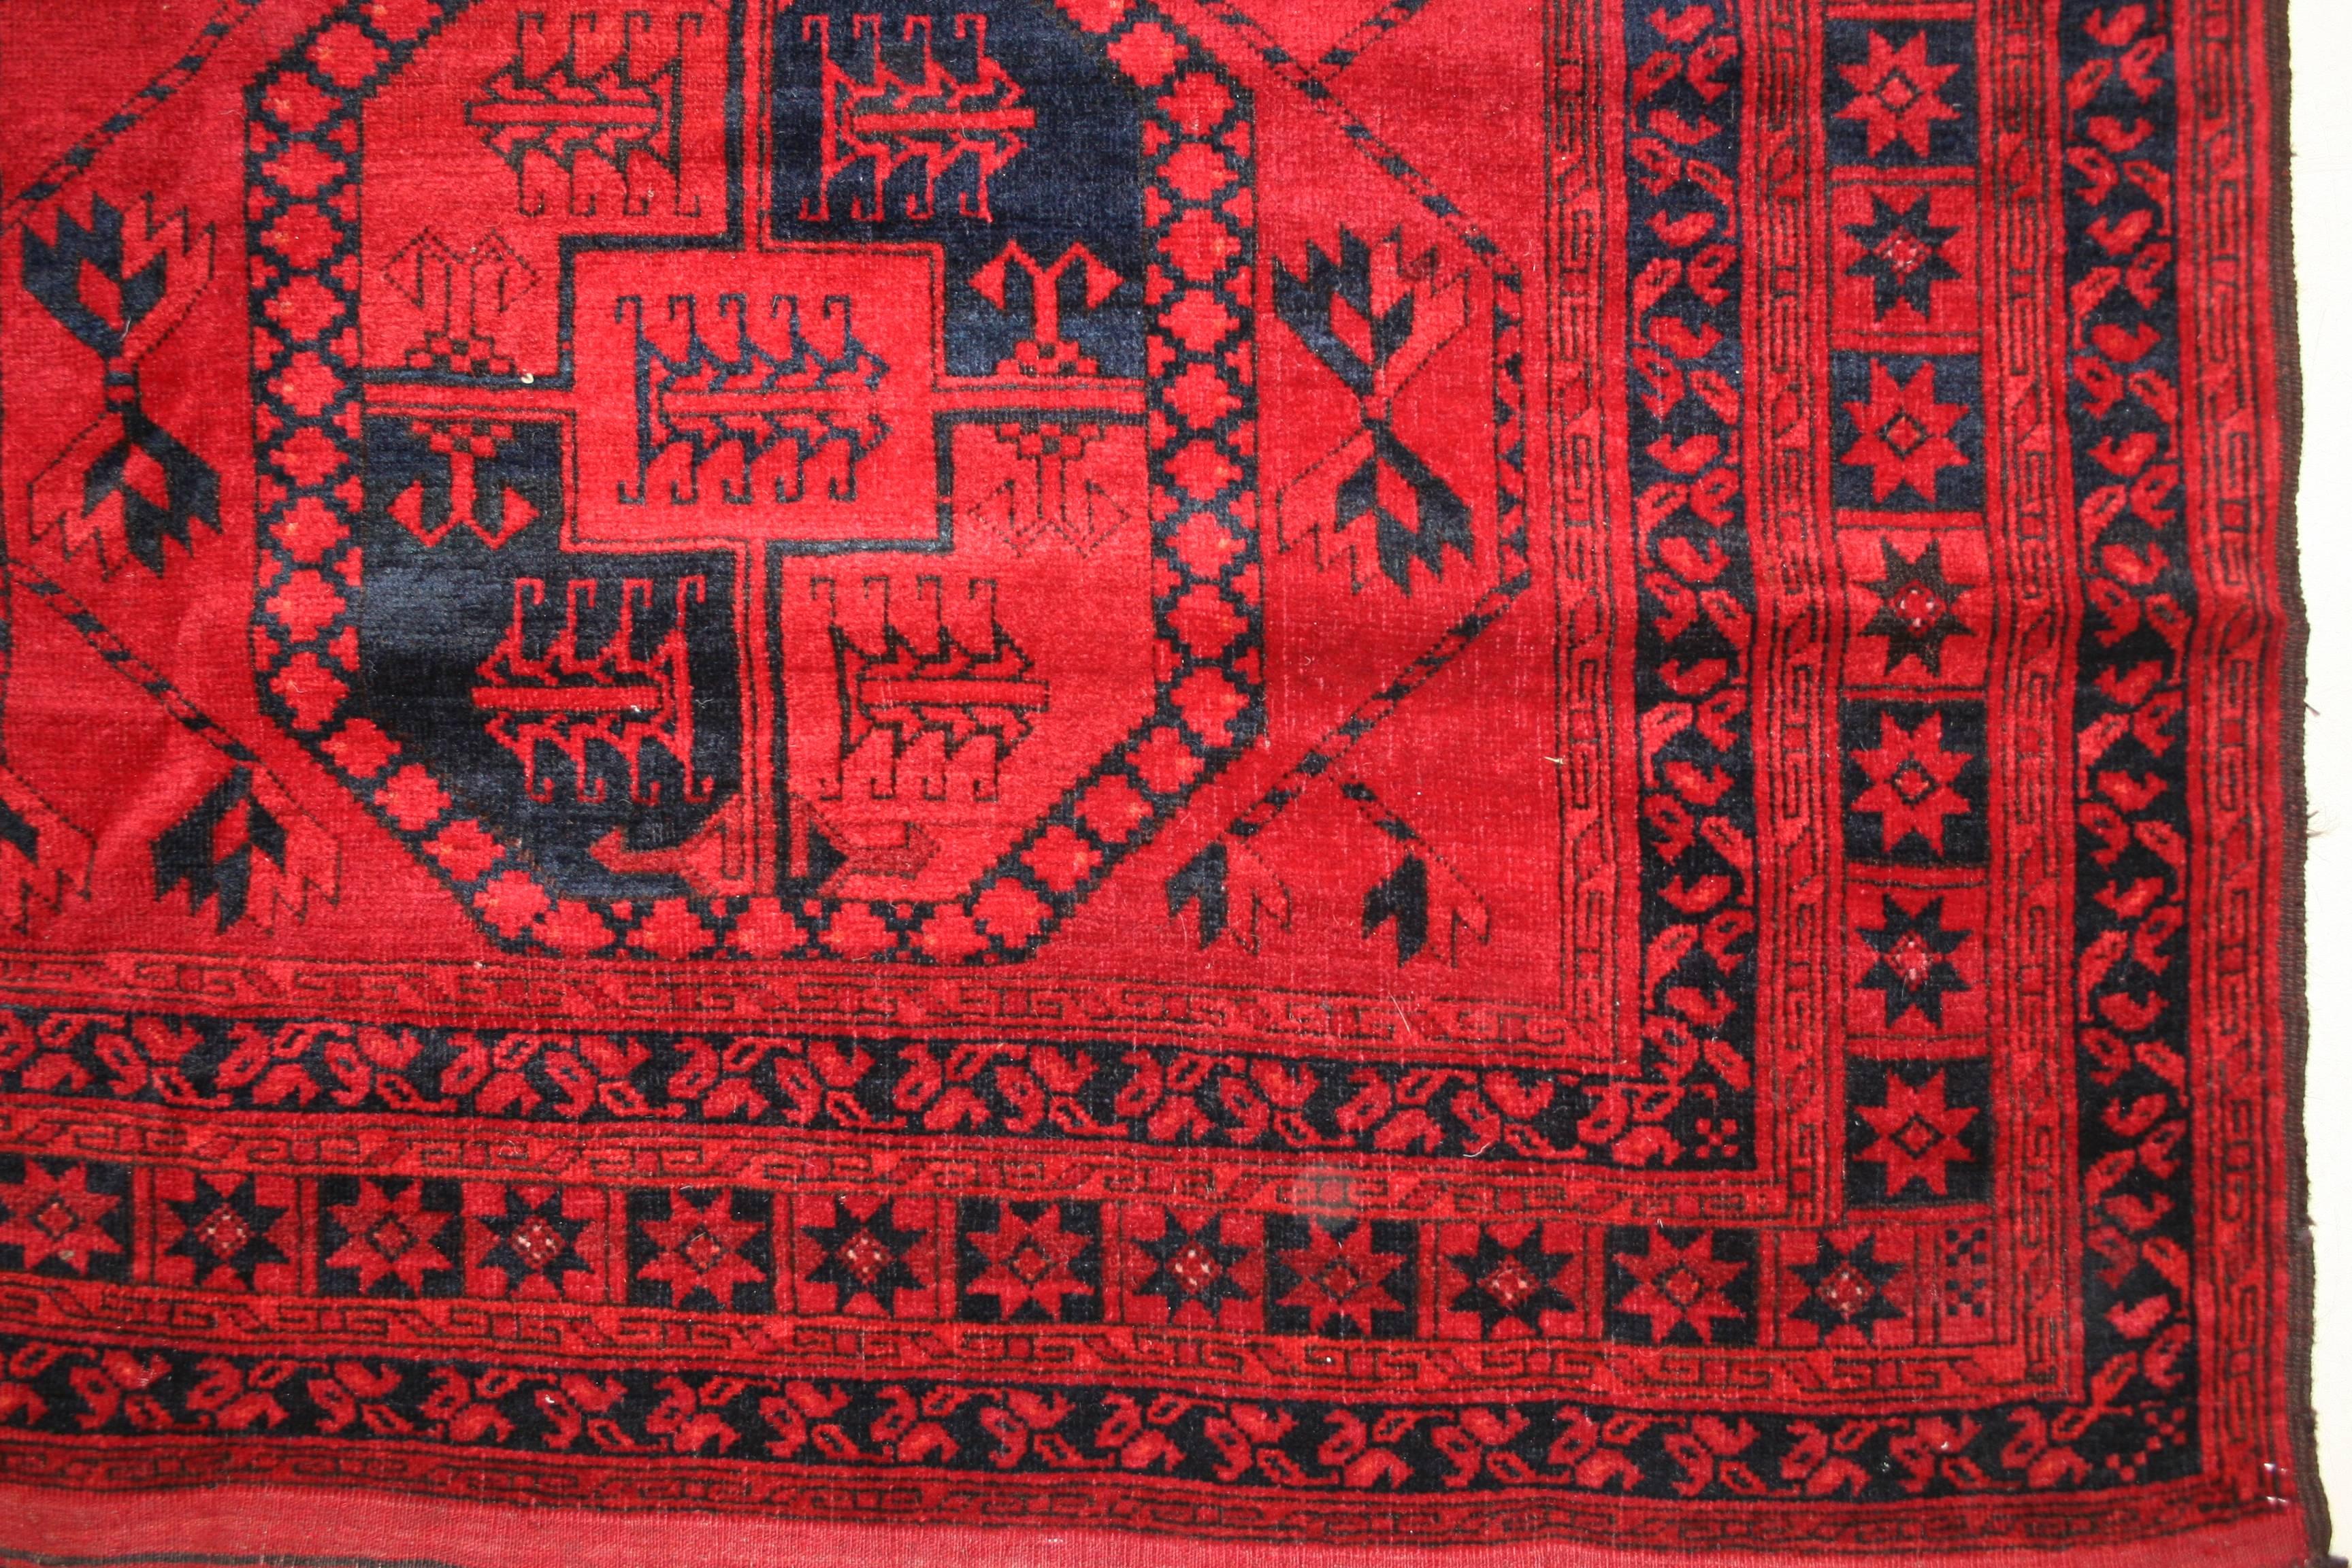 Un tapis principal turkmène classique qui se distingue par une tonalité unique de rouge rubis pour le fond. Le motif allover composé de trois rangées parallèles de dispositifs octogonaux est un élément caractéristique de la tribu turkmène des